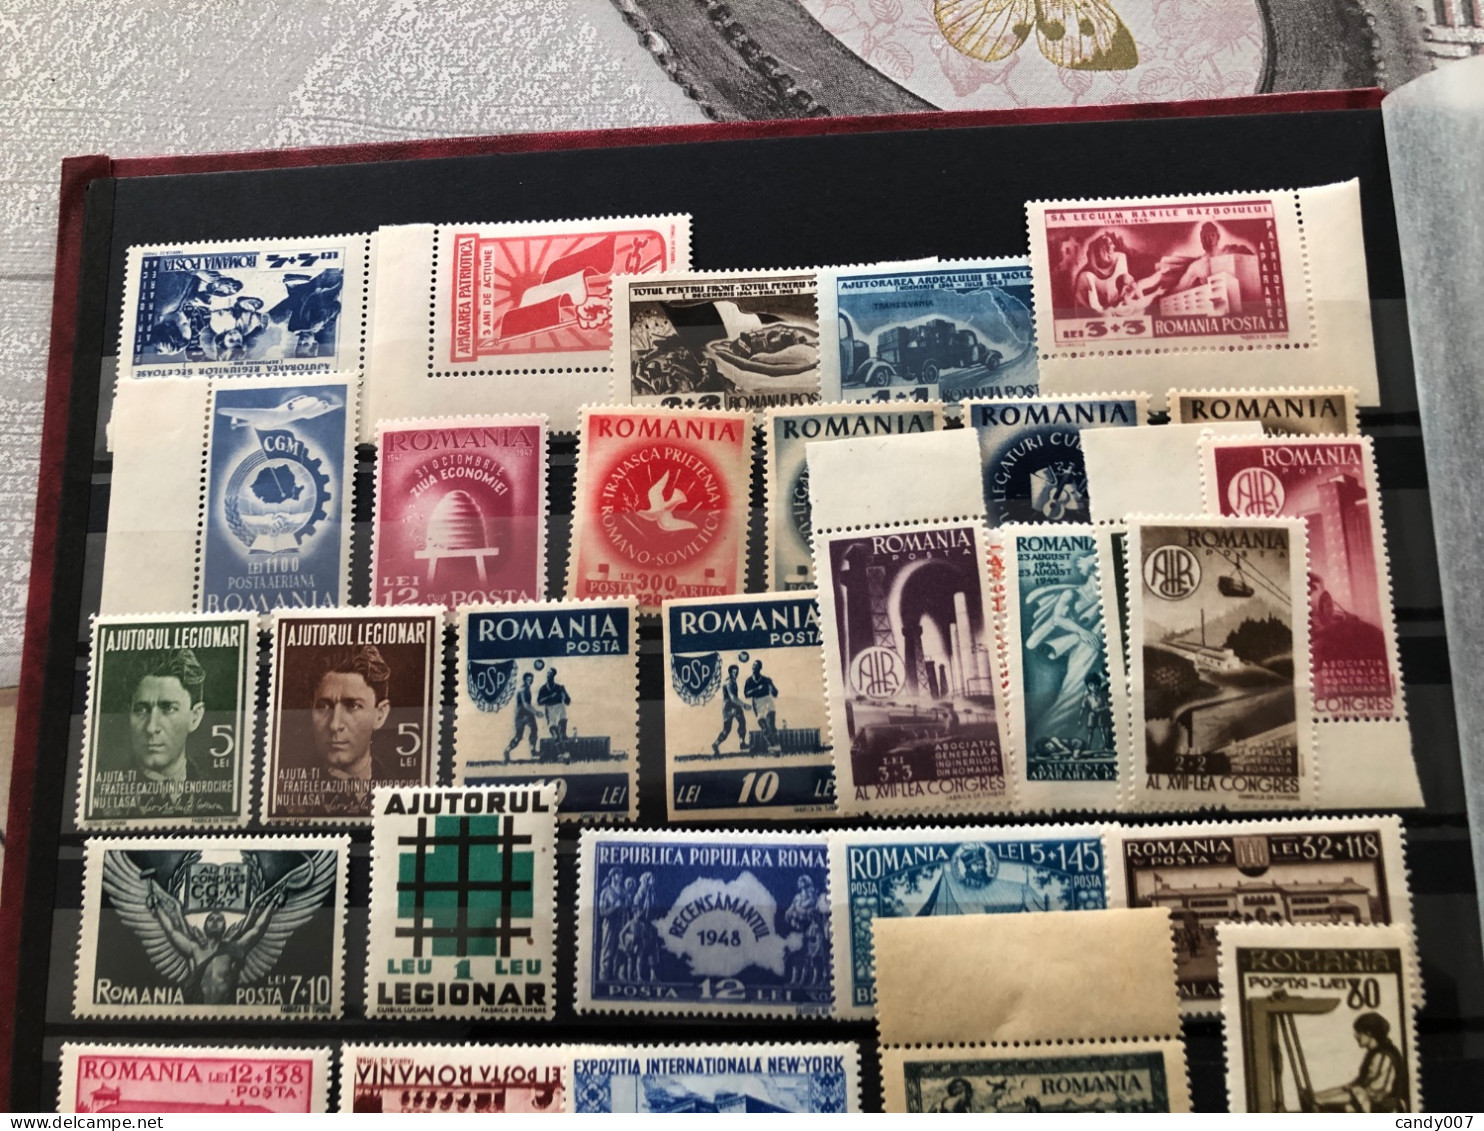 Album de timbres de Roumanie Neuf** + blocs et feuillet dentelé et non dentelé